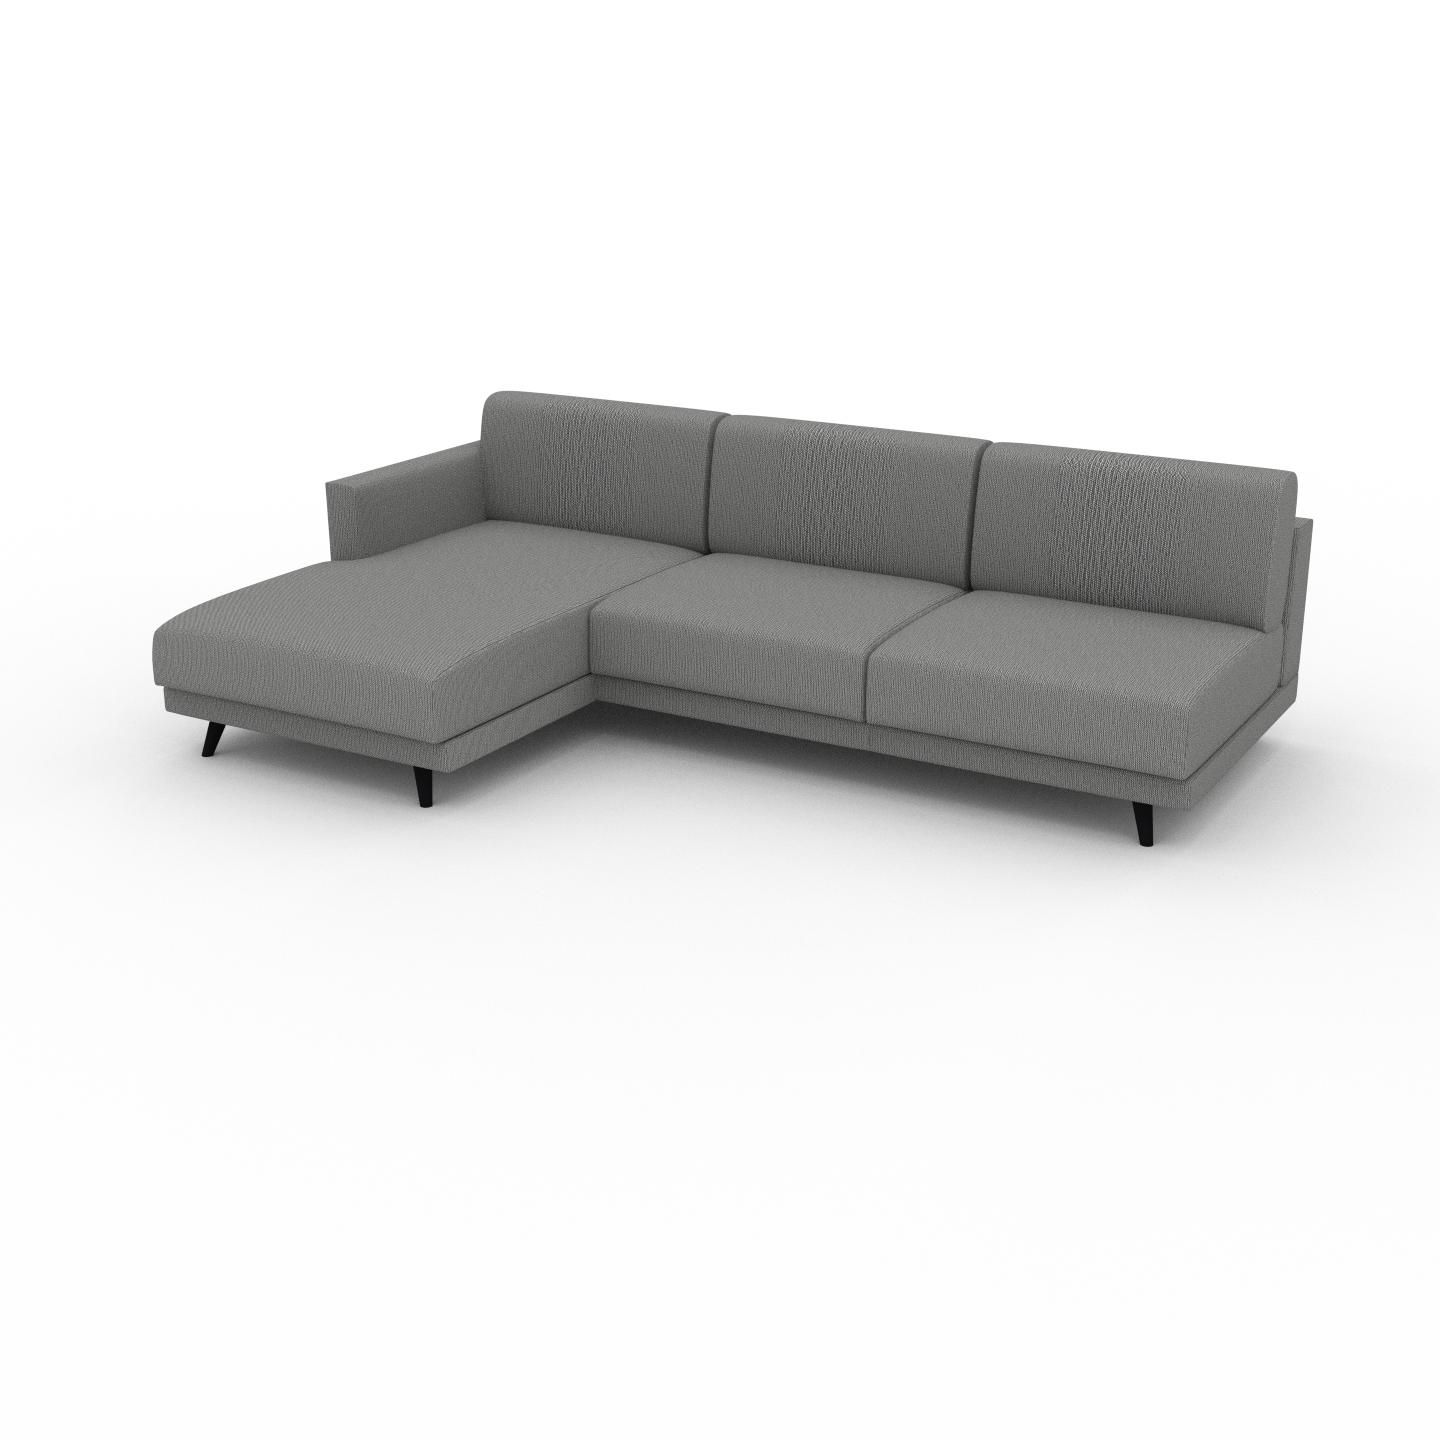 MYCS Ecksofa Granitweiß - Flexible Designer-Polsterecke, L-Form: Beste Qualität, einzigartiges Design - 253 x 75 x 162 cm, konfigurierbar